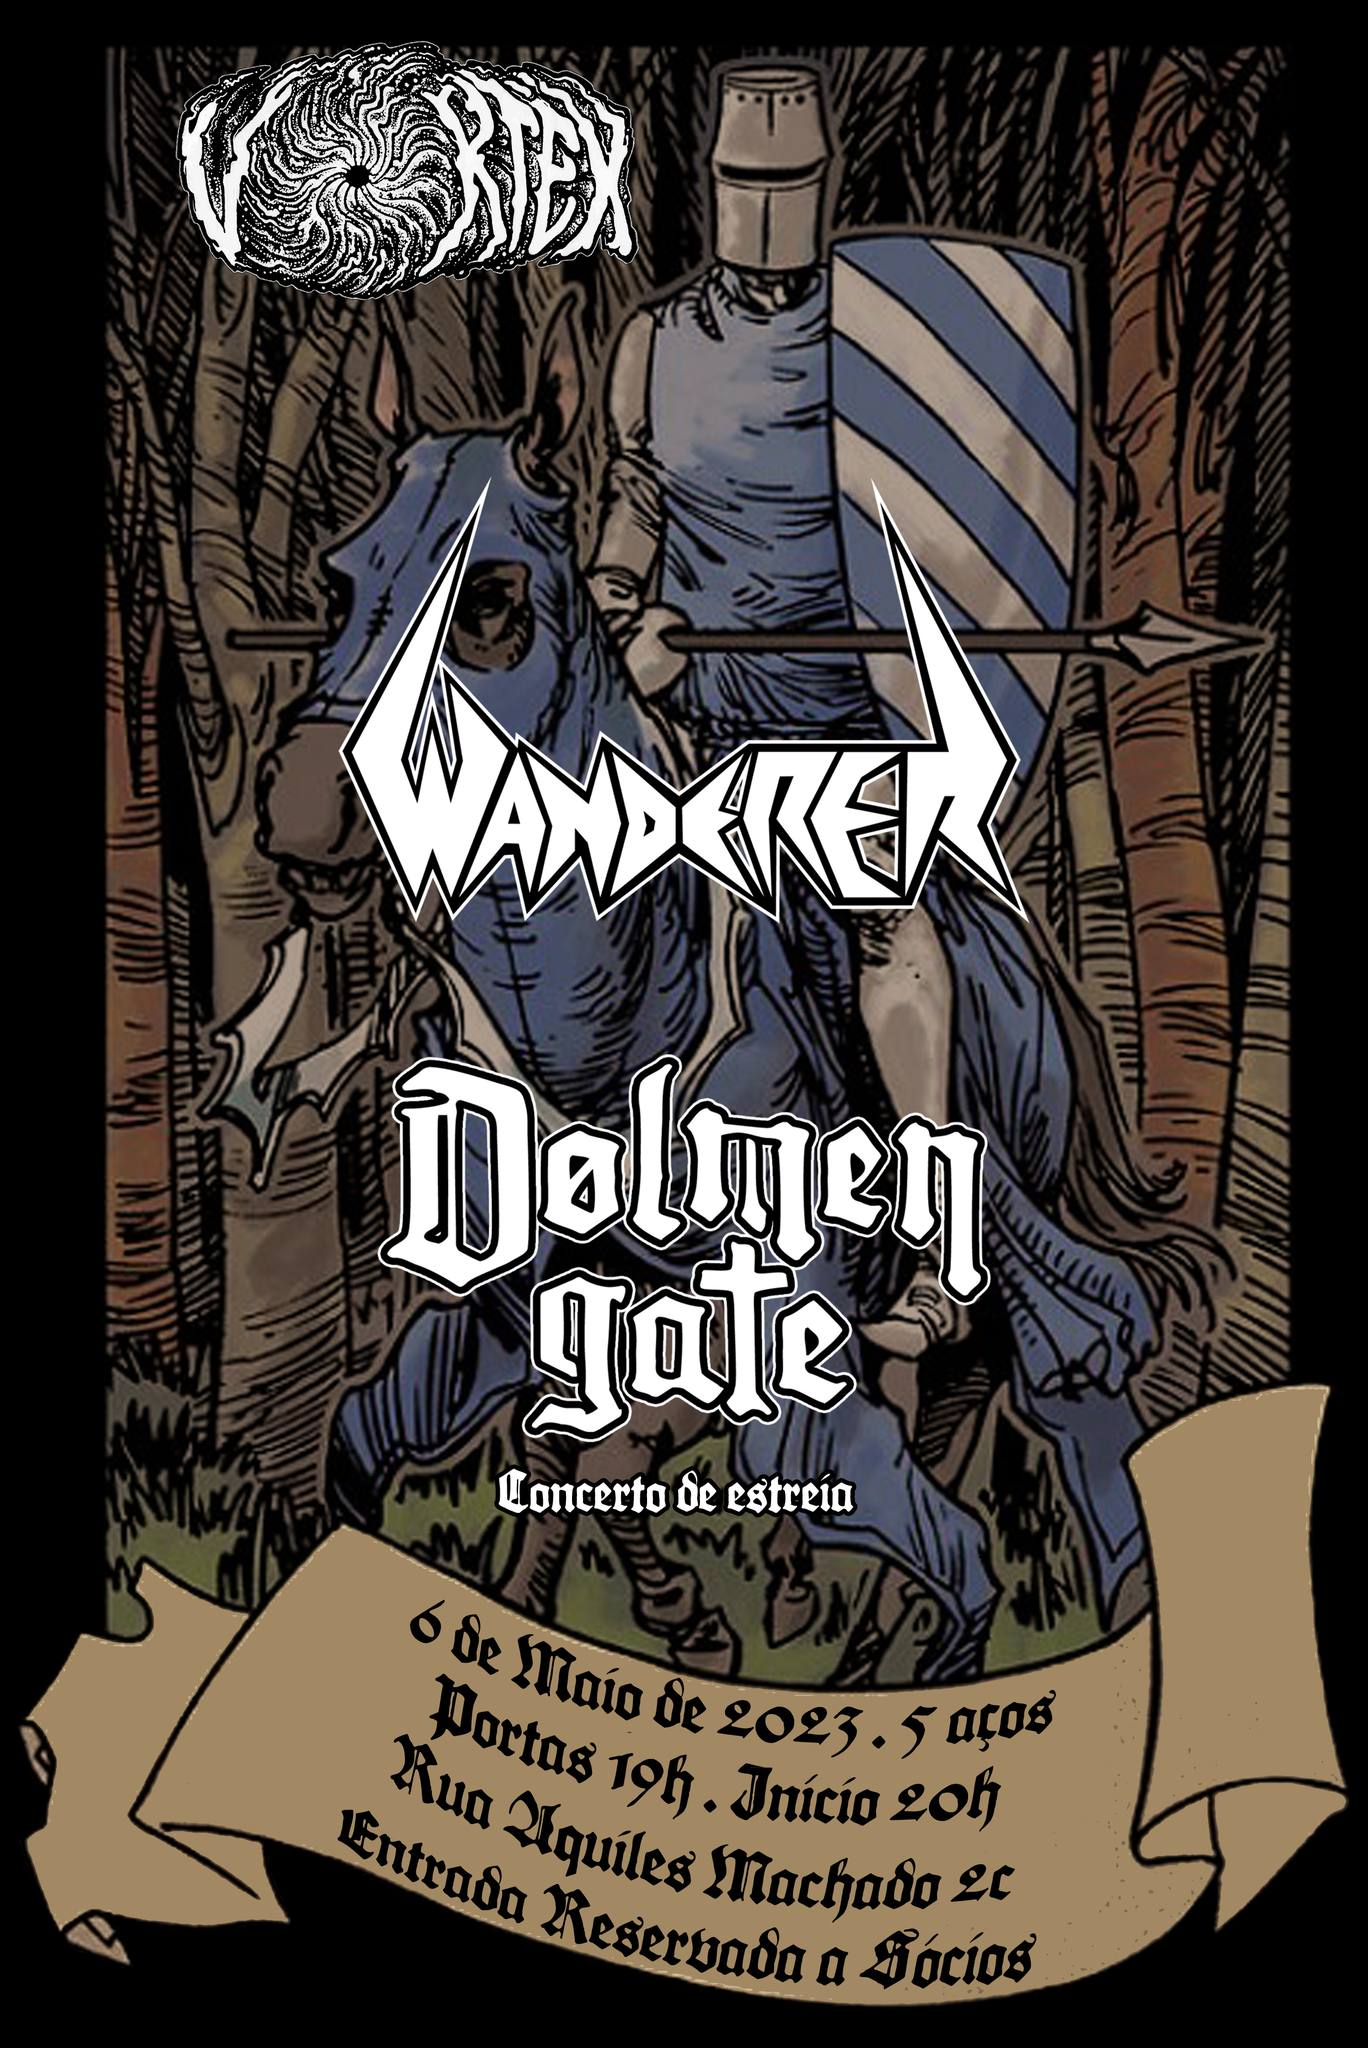 Wanderer + Dolmen Gate @ Vortex